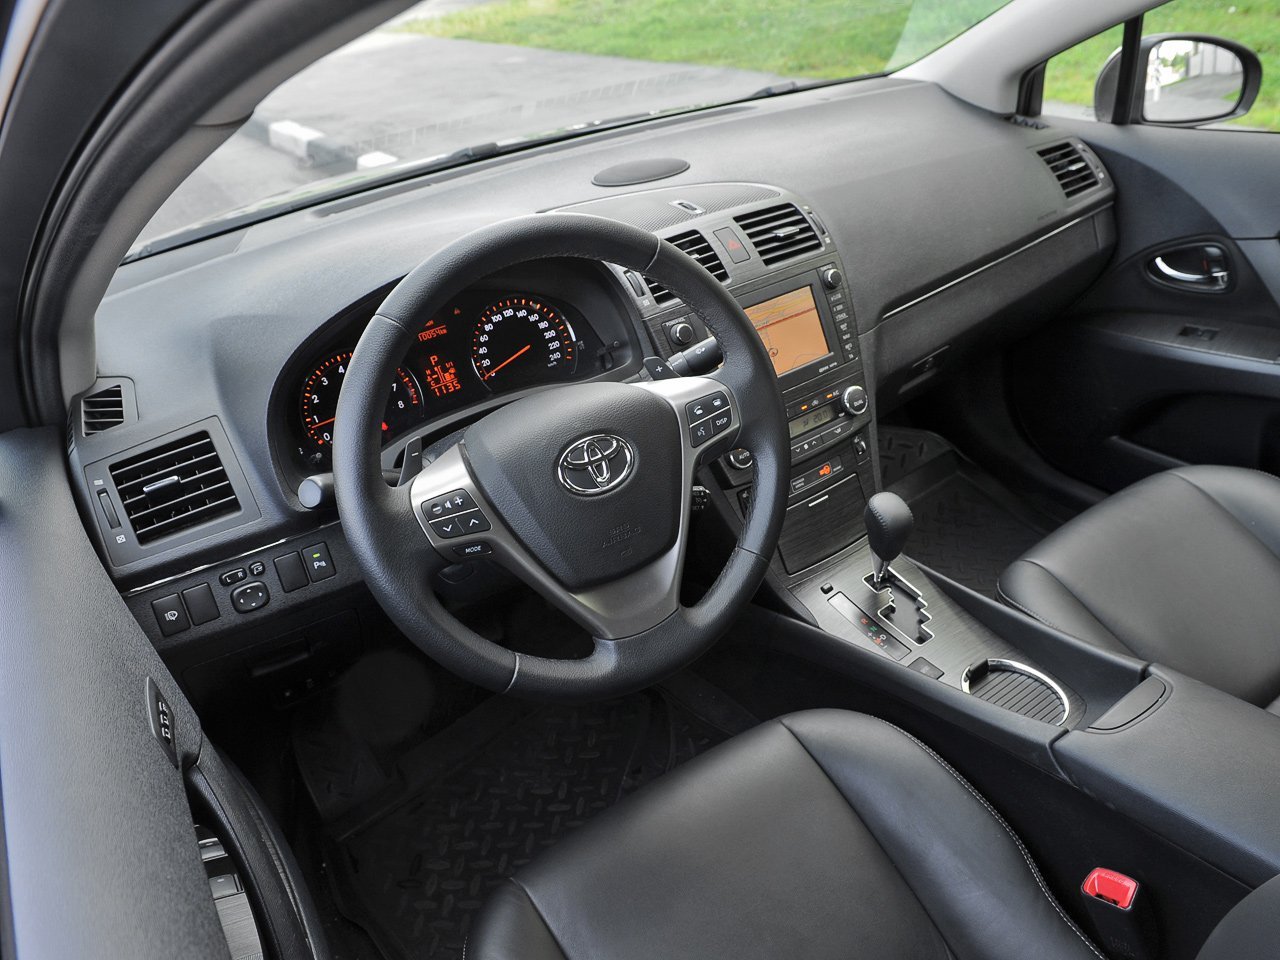 универсал Toyota Avensis 2009 - 2011г выпуска модификация 2.0 MT (126 л.с.)